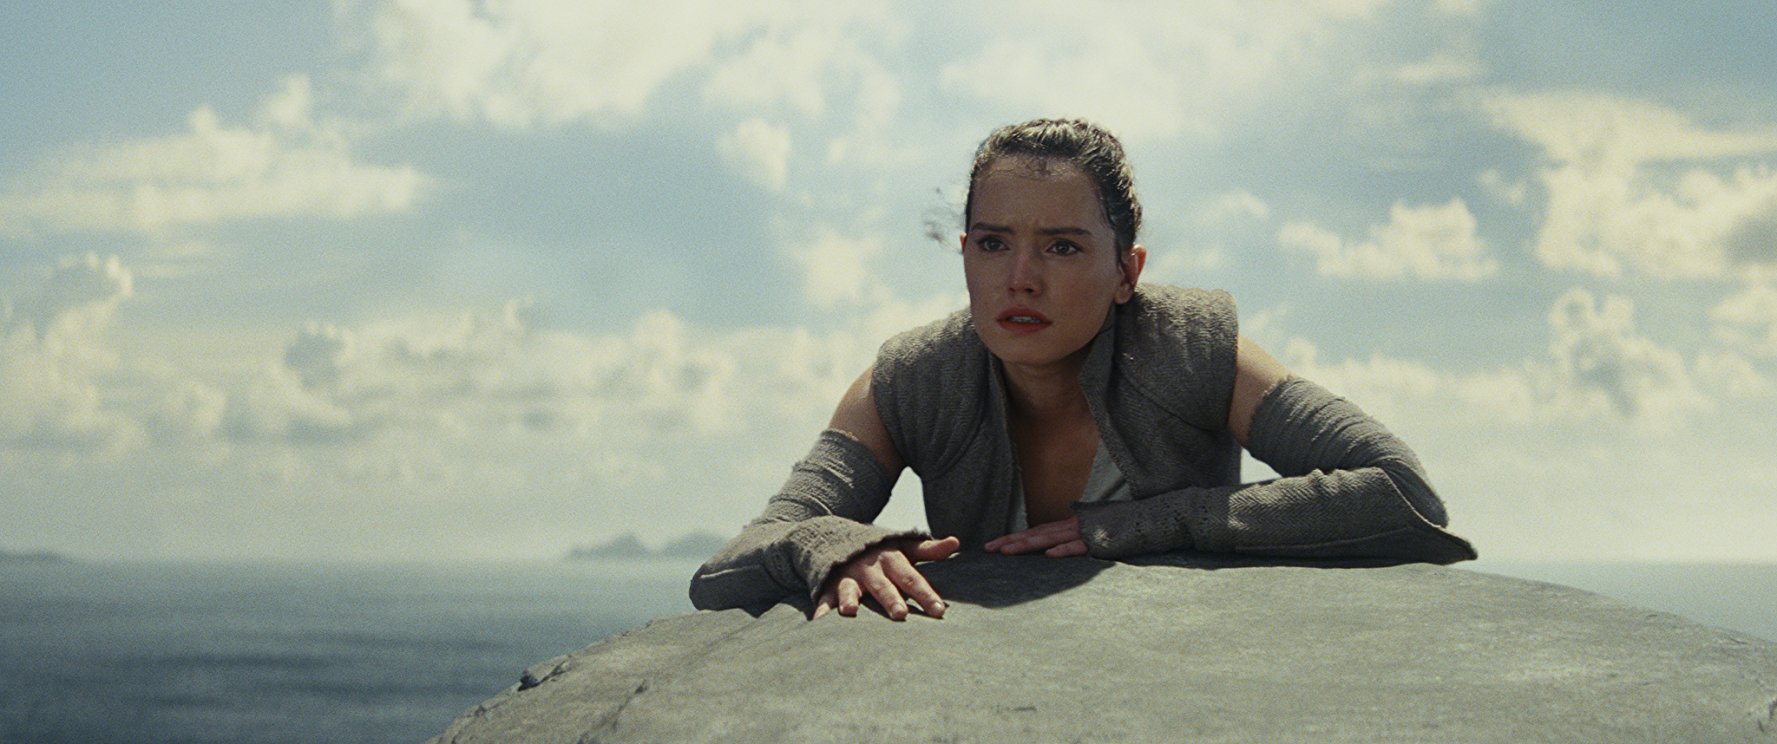 Rey a Star Wars nyolcadik részében leküzdi a jó-rossz klisévé vállt ellentétét.